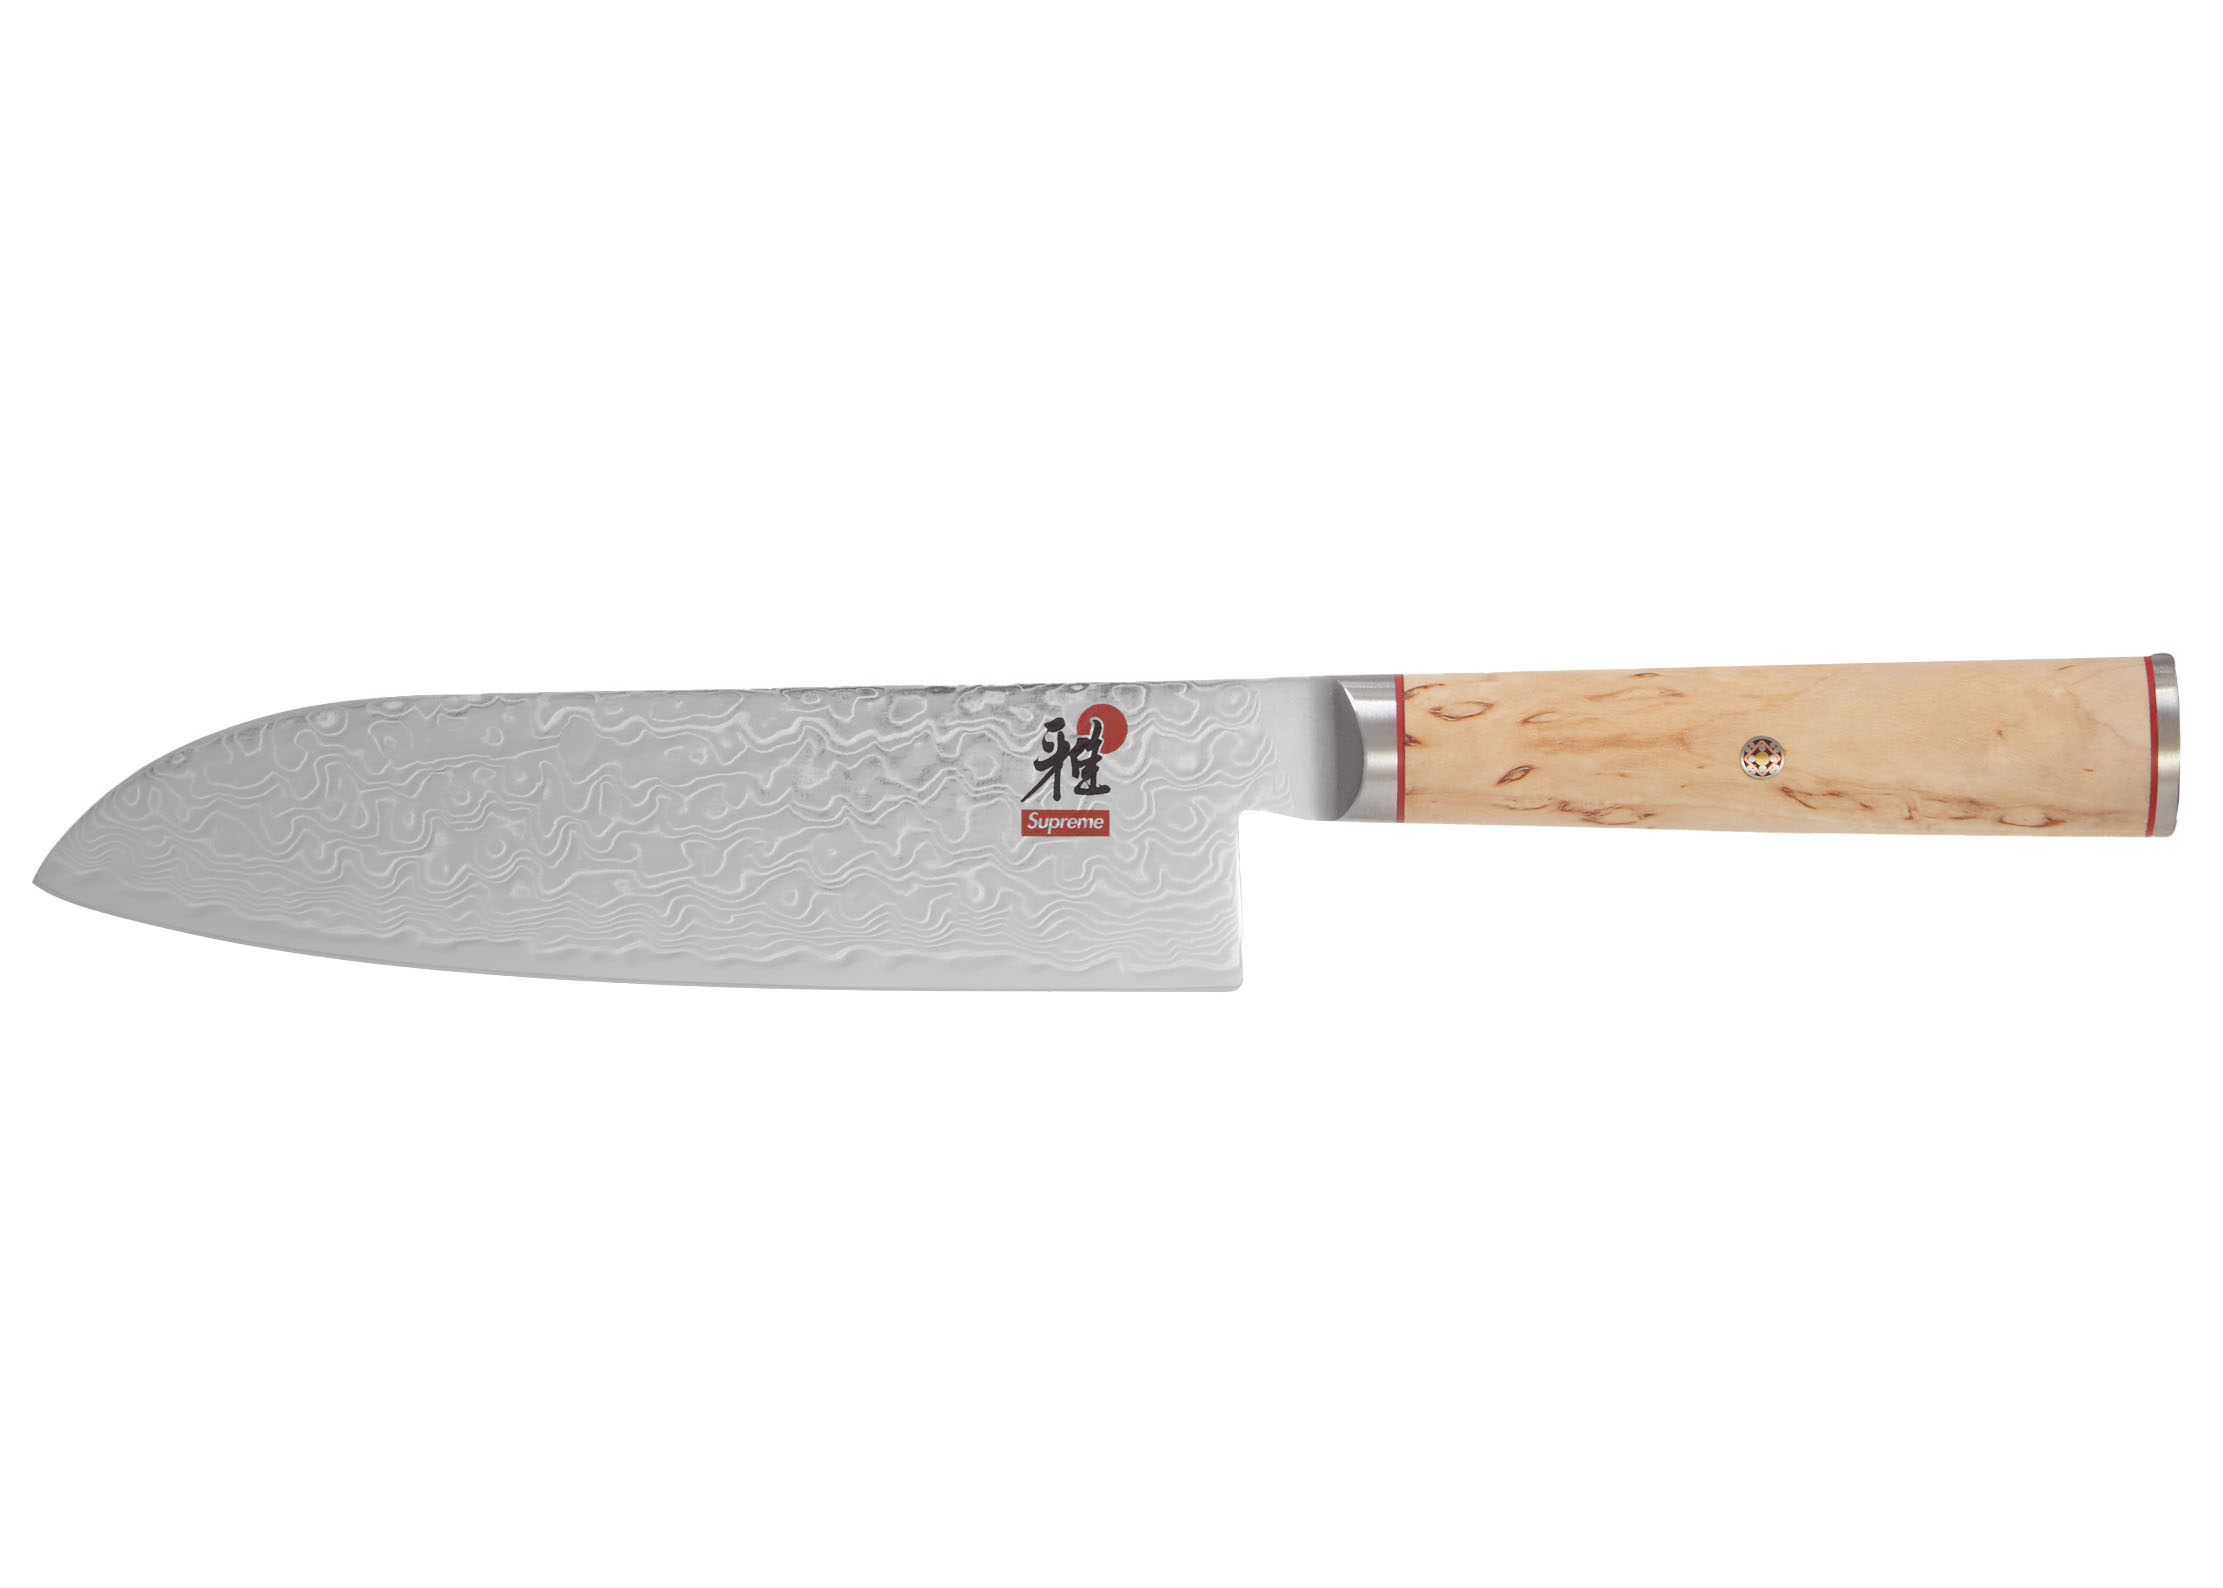 SupSupreme Miyabi Birchwood Santoku 7Knife